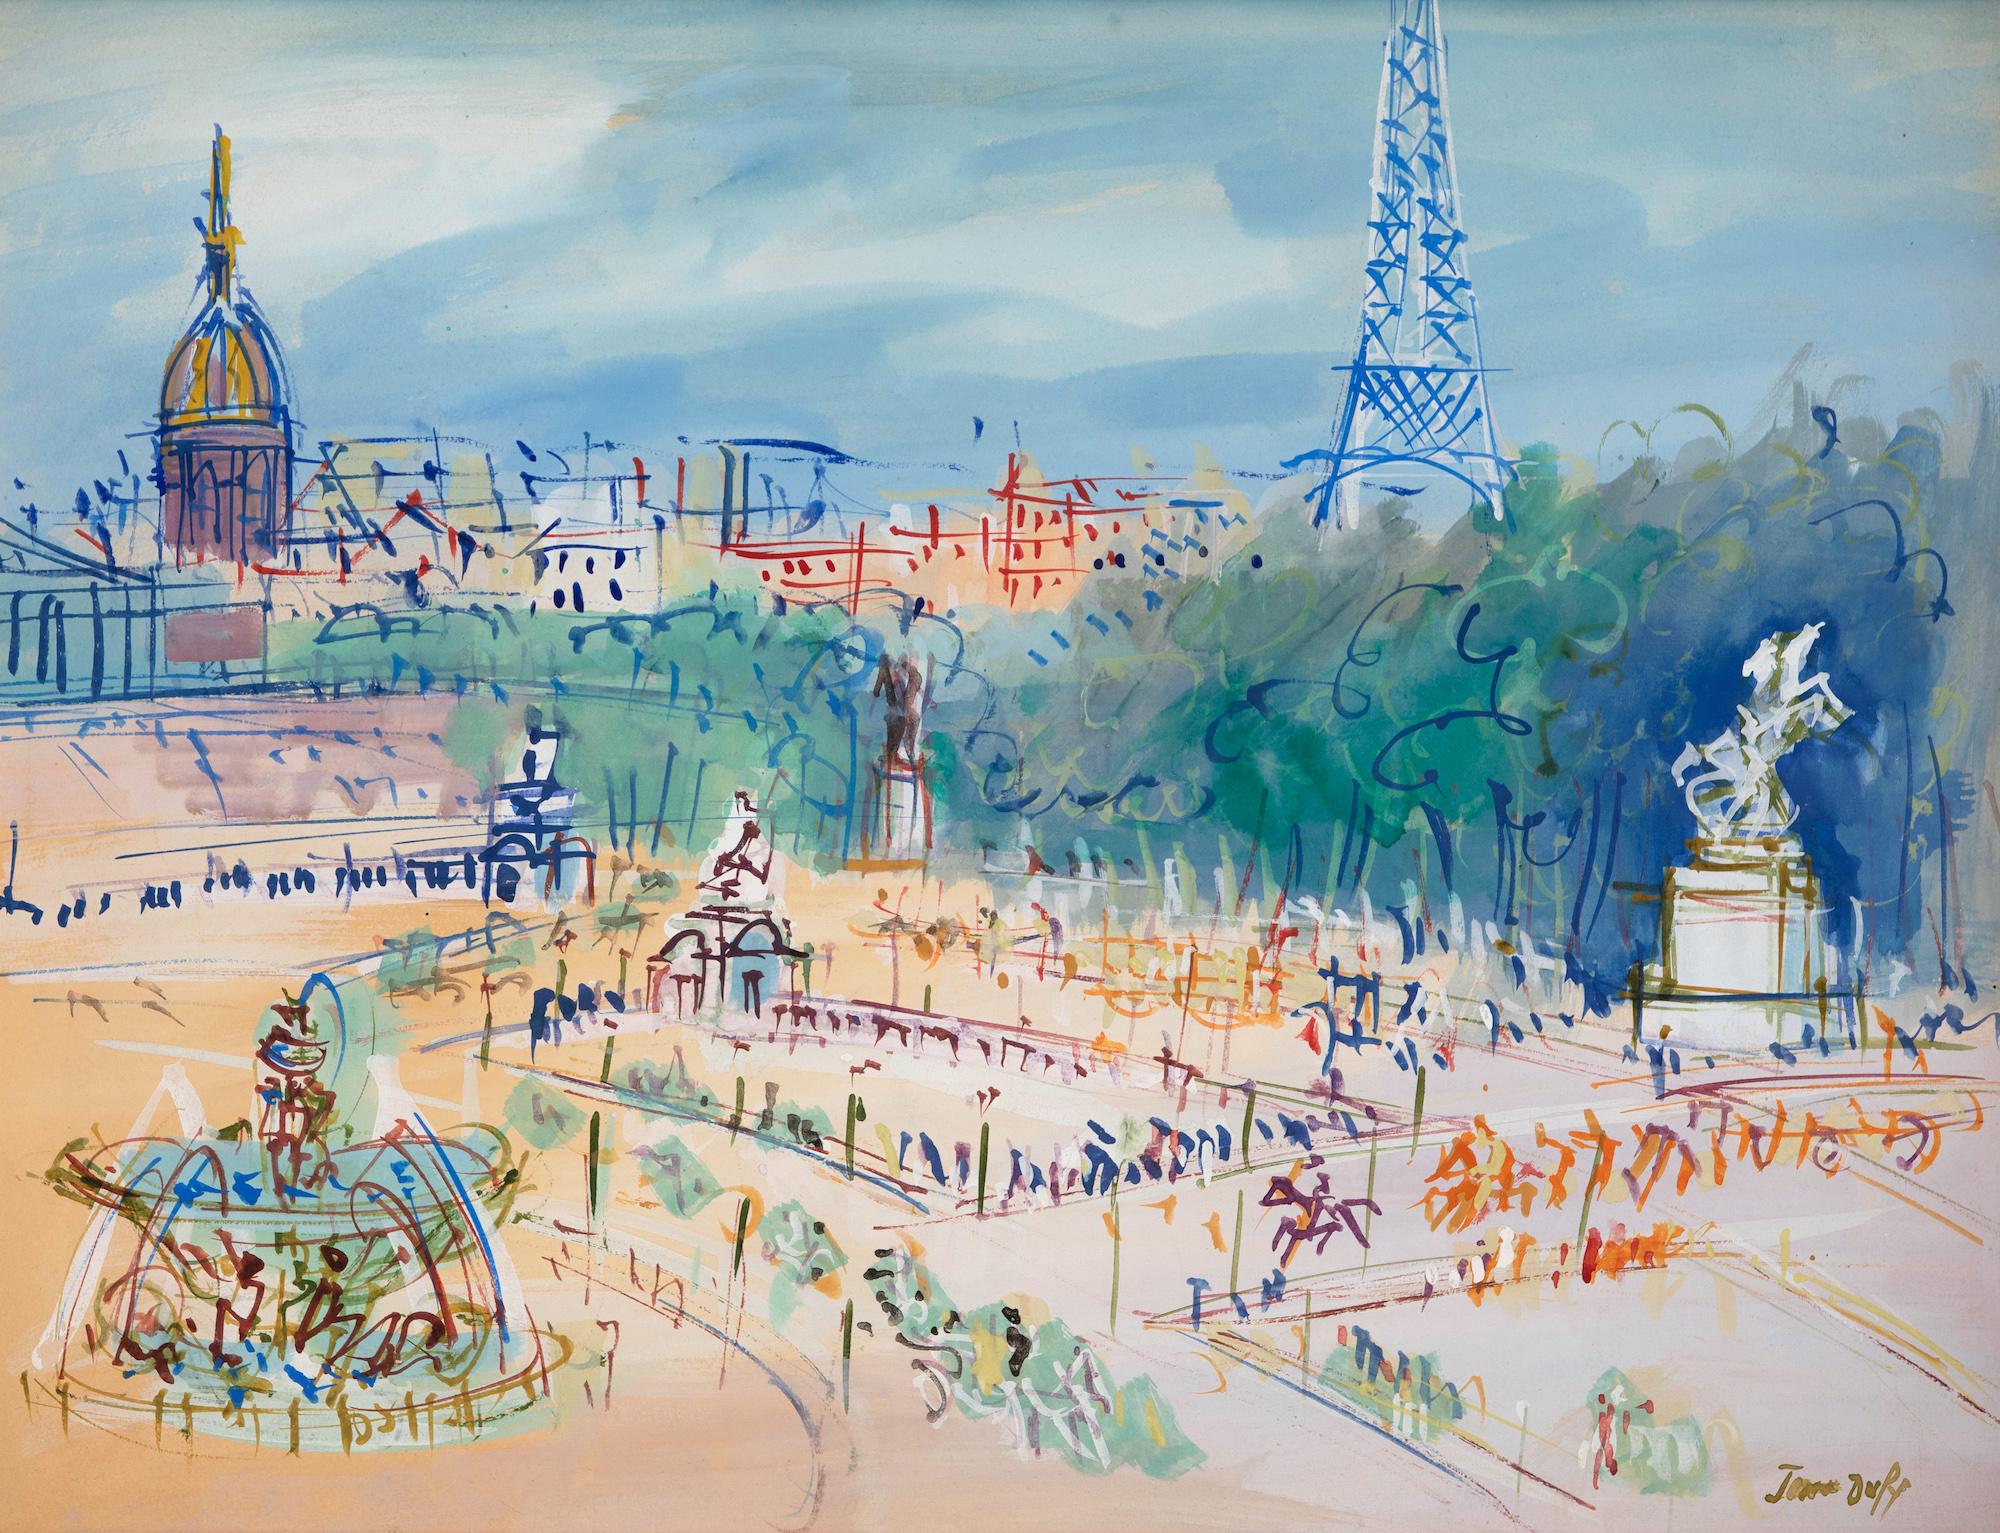 Place de la Concorde by Jean Dufy - Mixed media on paper, Parisian scene